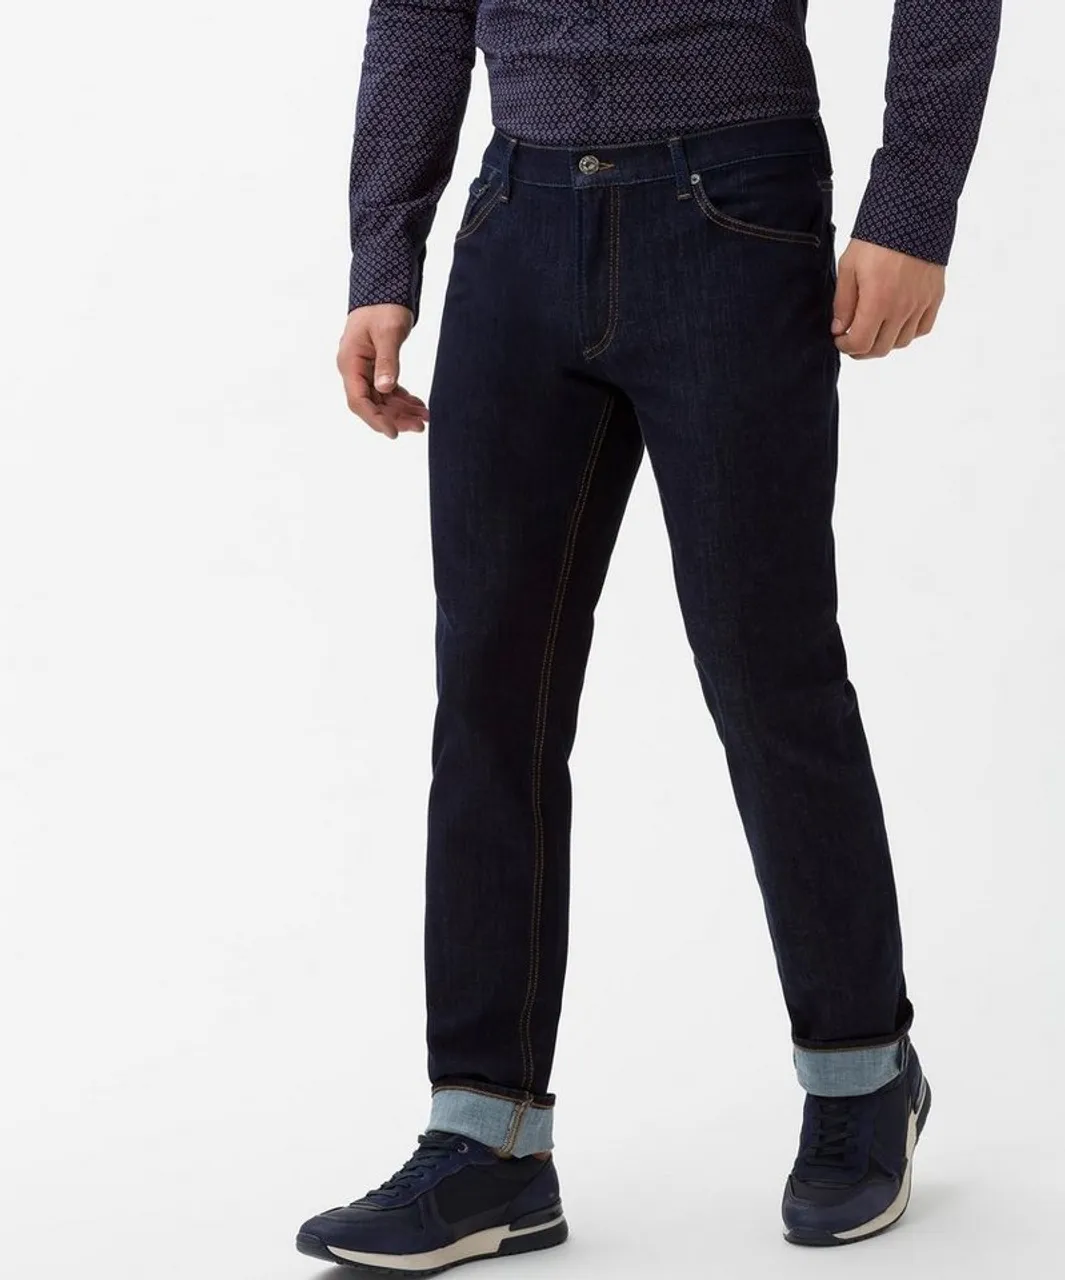 Brax Herren Slim Fit Jeans Hose Style Chuck Hi-Flex Stretch 80-6440-23 -  Preise vergleichen